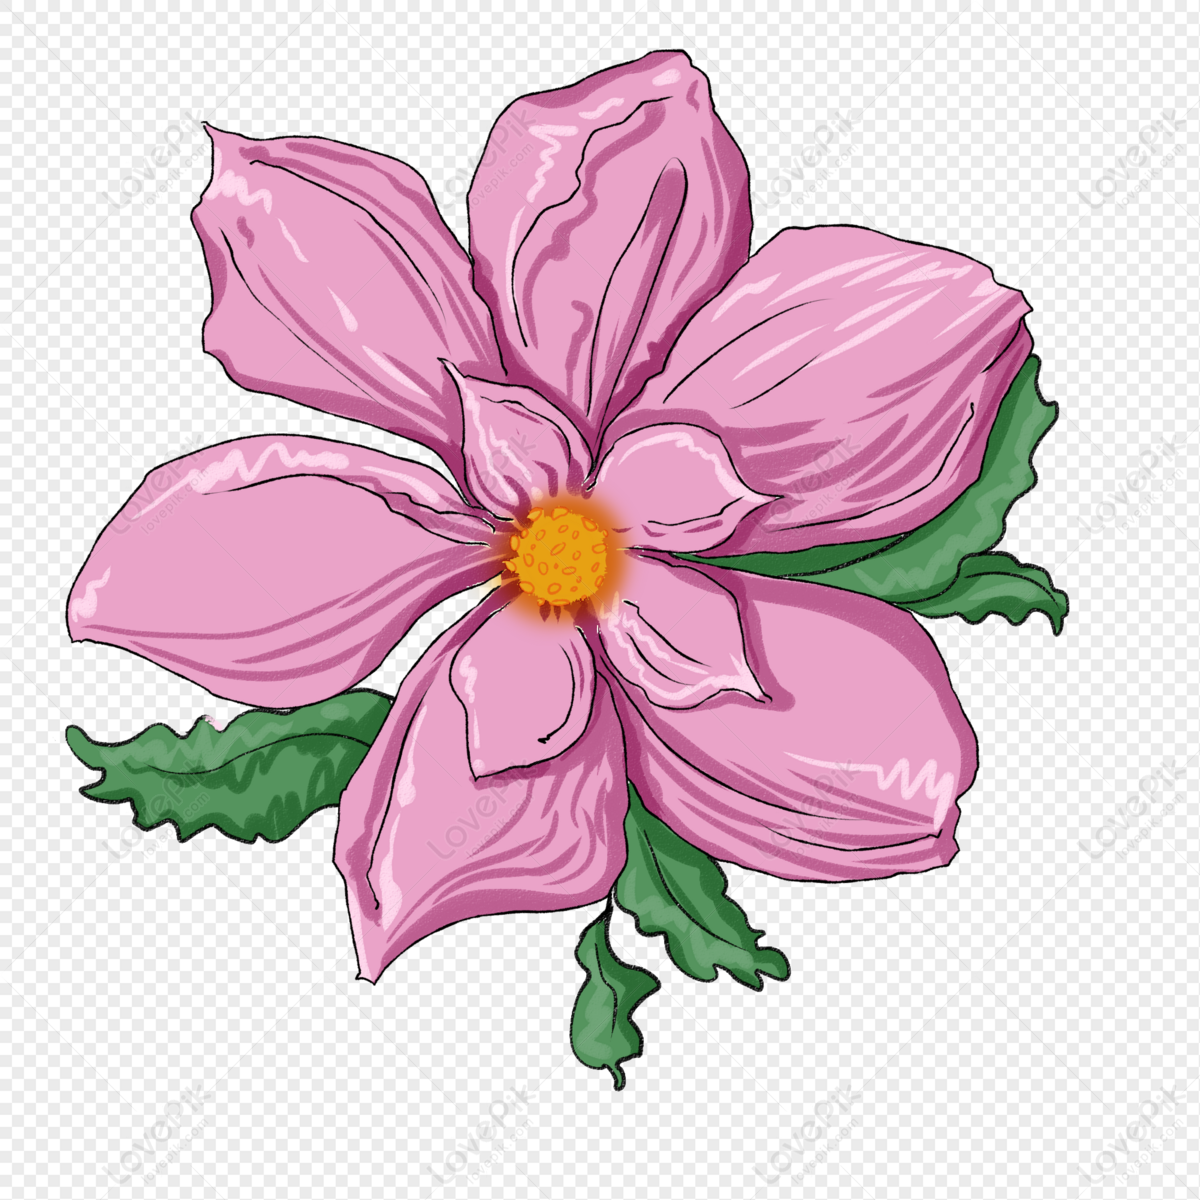 Những đồ hoa hồng Begonia tuyệt đẹp sắc màu rực rỡ sẽ làm cho ngày của bạn thêm rực rỡ hơn. Hãy chiêm ngưỡng vẻ đẹp thần tiên của chúng và choáng ngợp trước sự phong phú của những màu sắc.